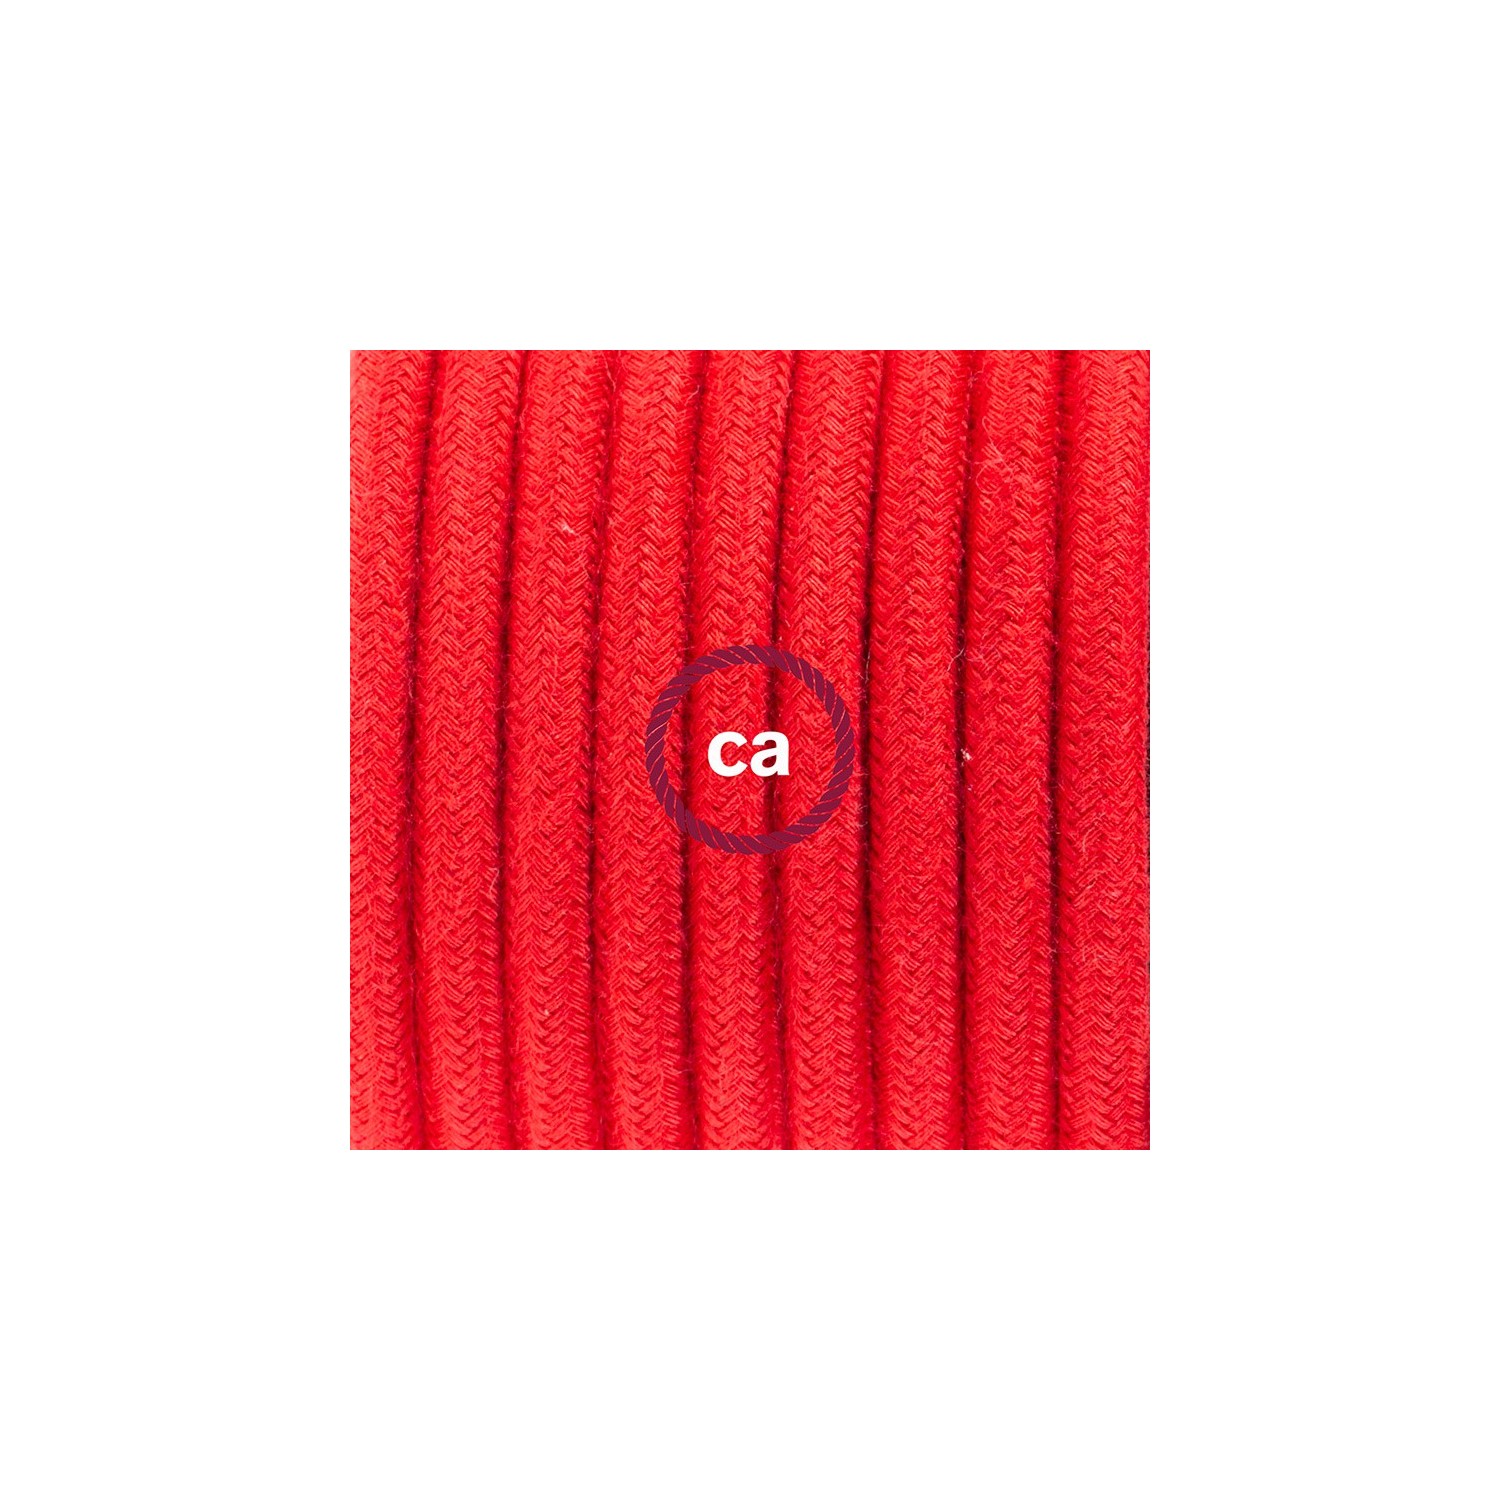 Cablaggio per lampada, cavo RC35 Cotone Rosso Fuoco 1,80 m. Scegli il colore dell'interruttore e della spina.